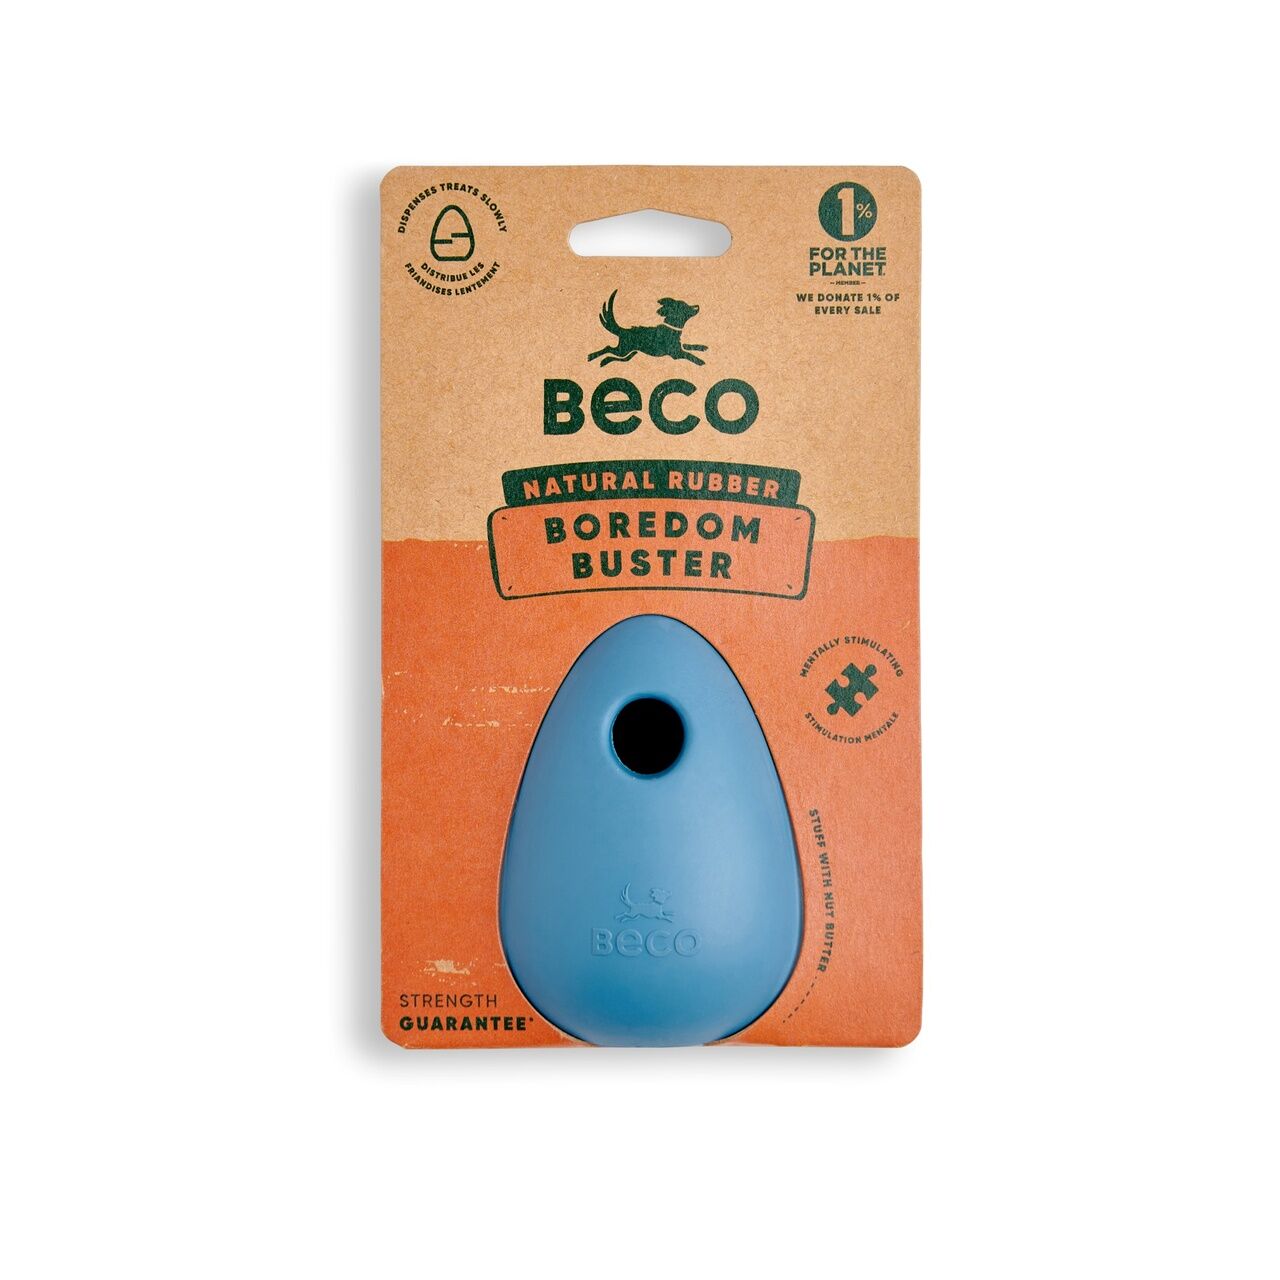 Beco-Boredom-Buster-Snackball-blau-aus-natuerlichem-Gummi-mit-Verpackung-BT-75640